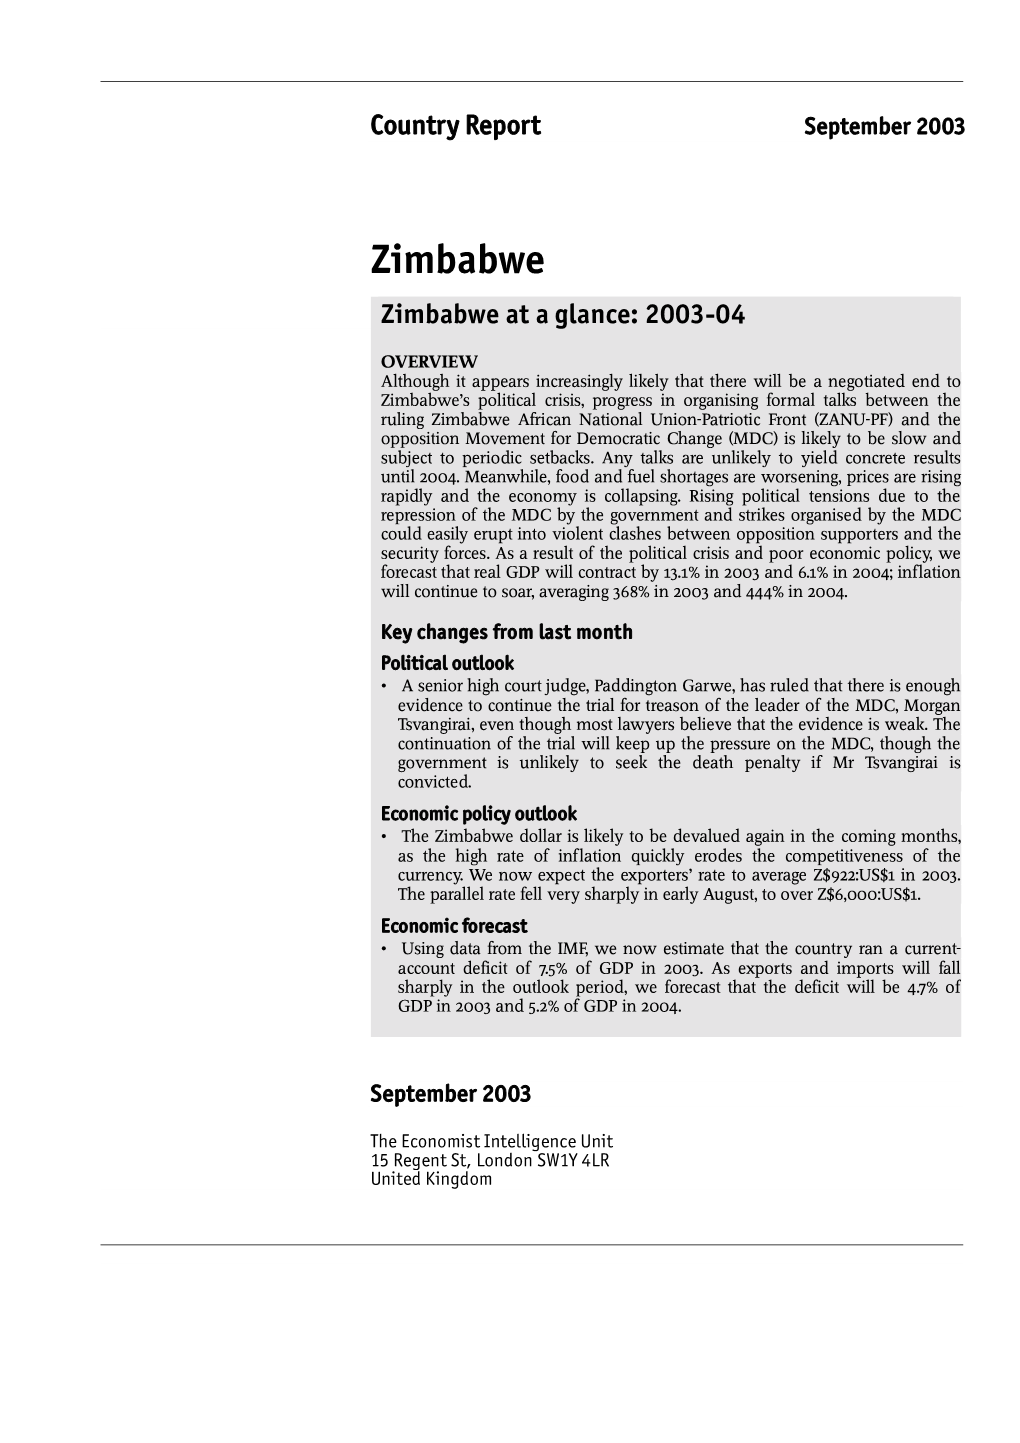 Zimbabwe Zimbabwe at a Glance: 2003-04